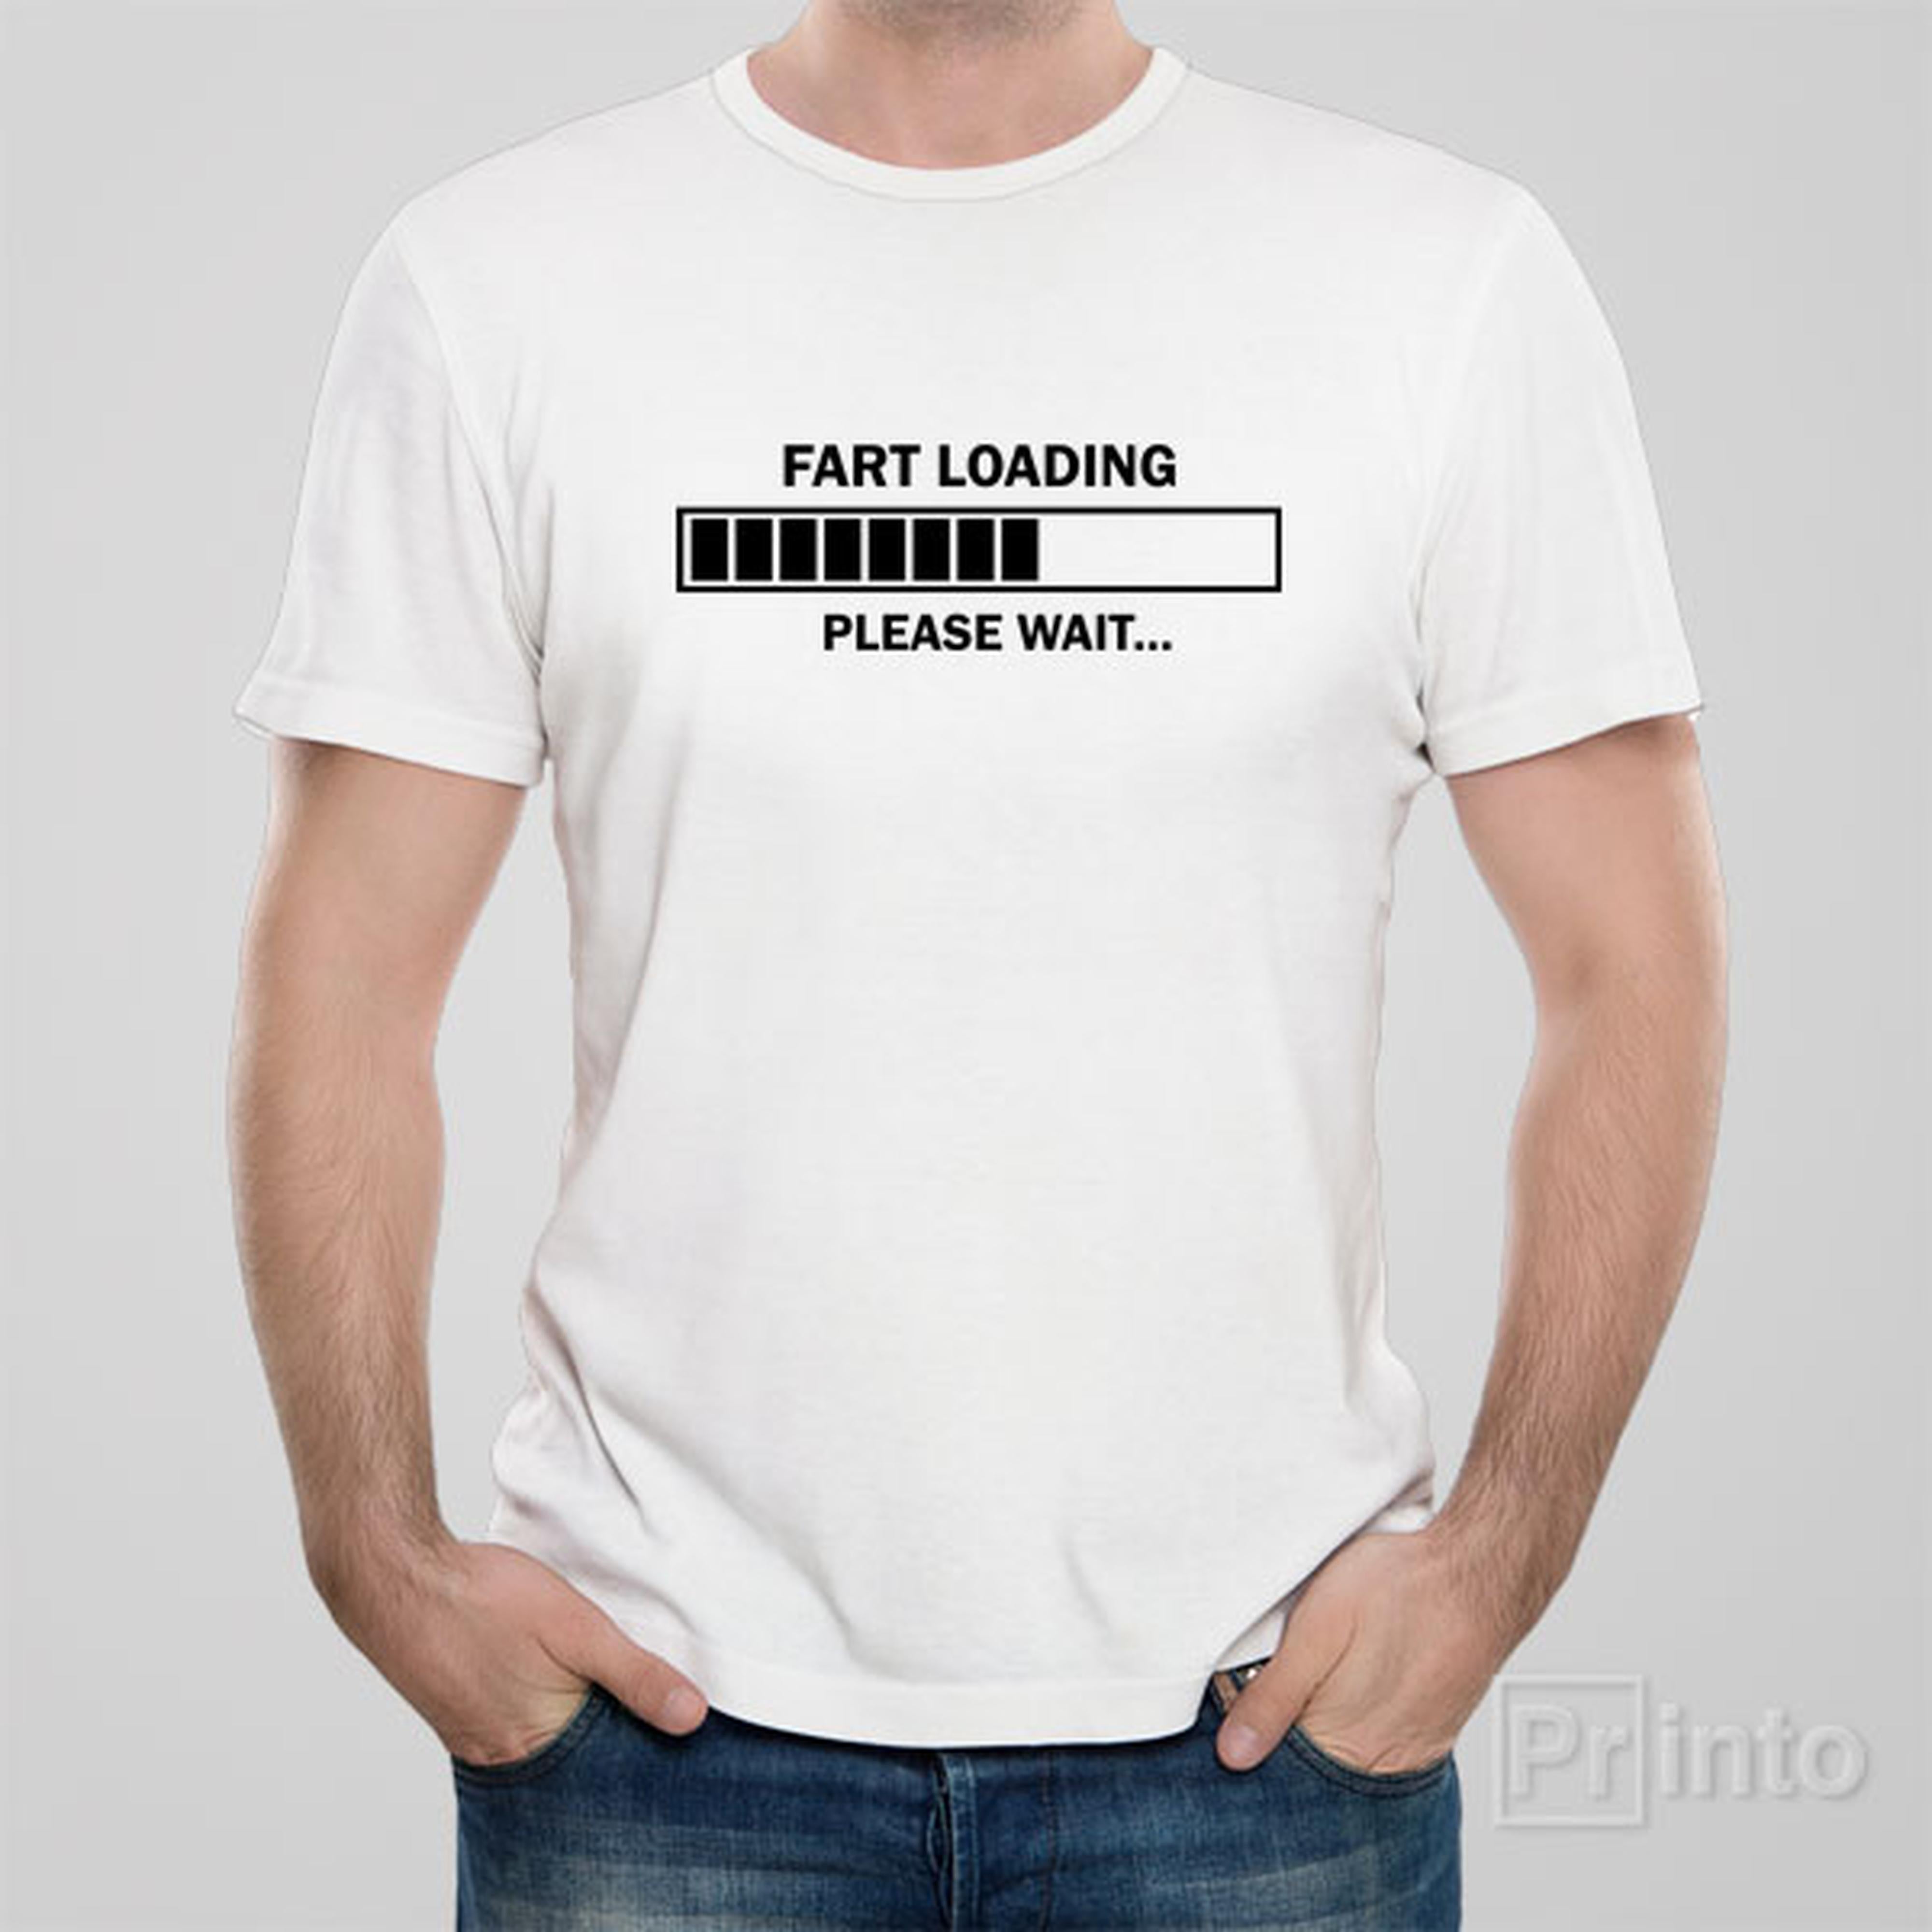 fart-loading-please-wait-t-shirt